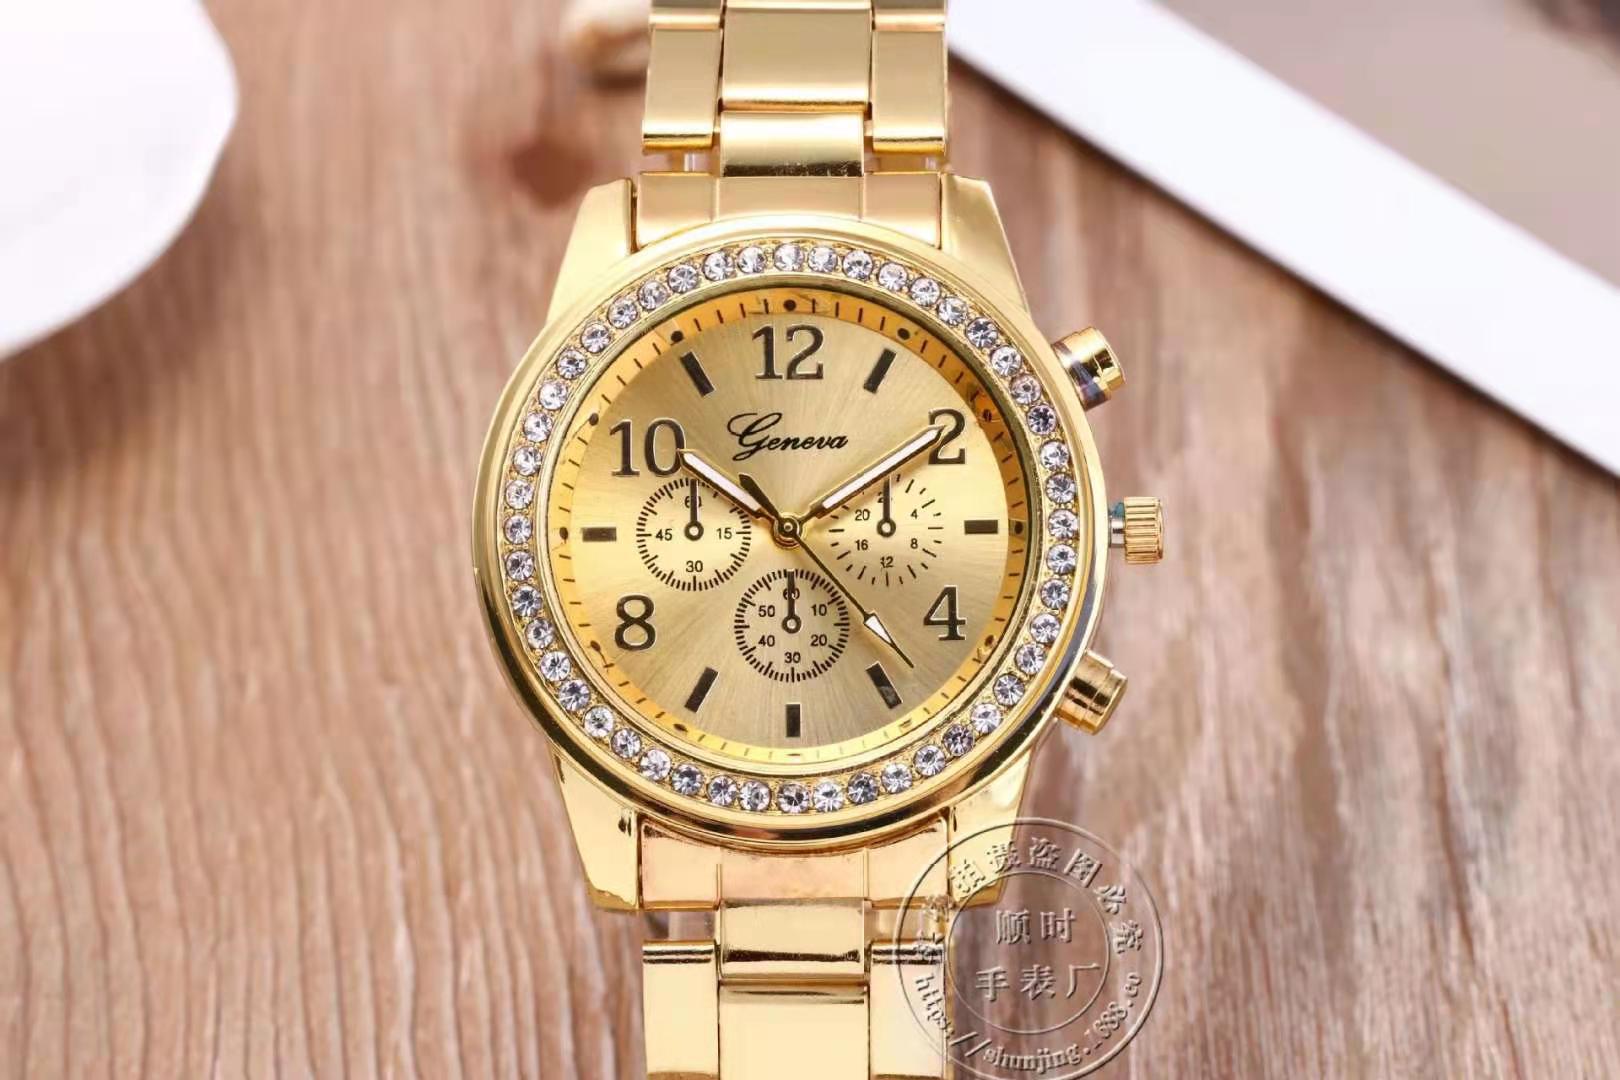 Stainless Steel Sport Quartz Hour Wrist Analog Watch Watches Women Fashion Watch 2021 Women's Watch 2021 Luxury Gift Relogio